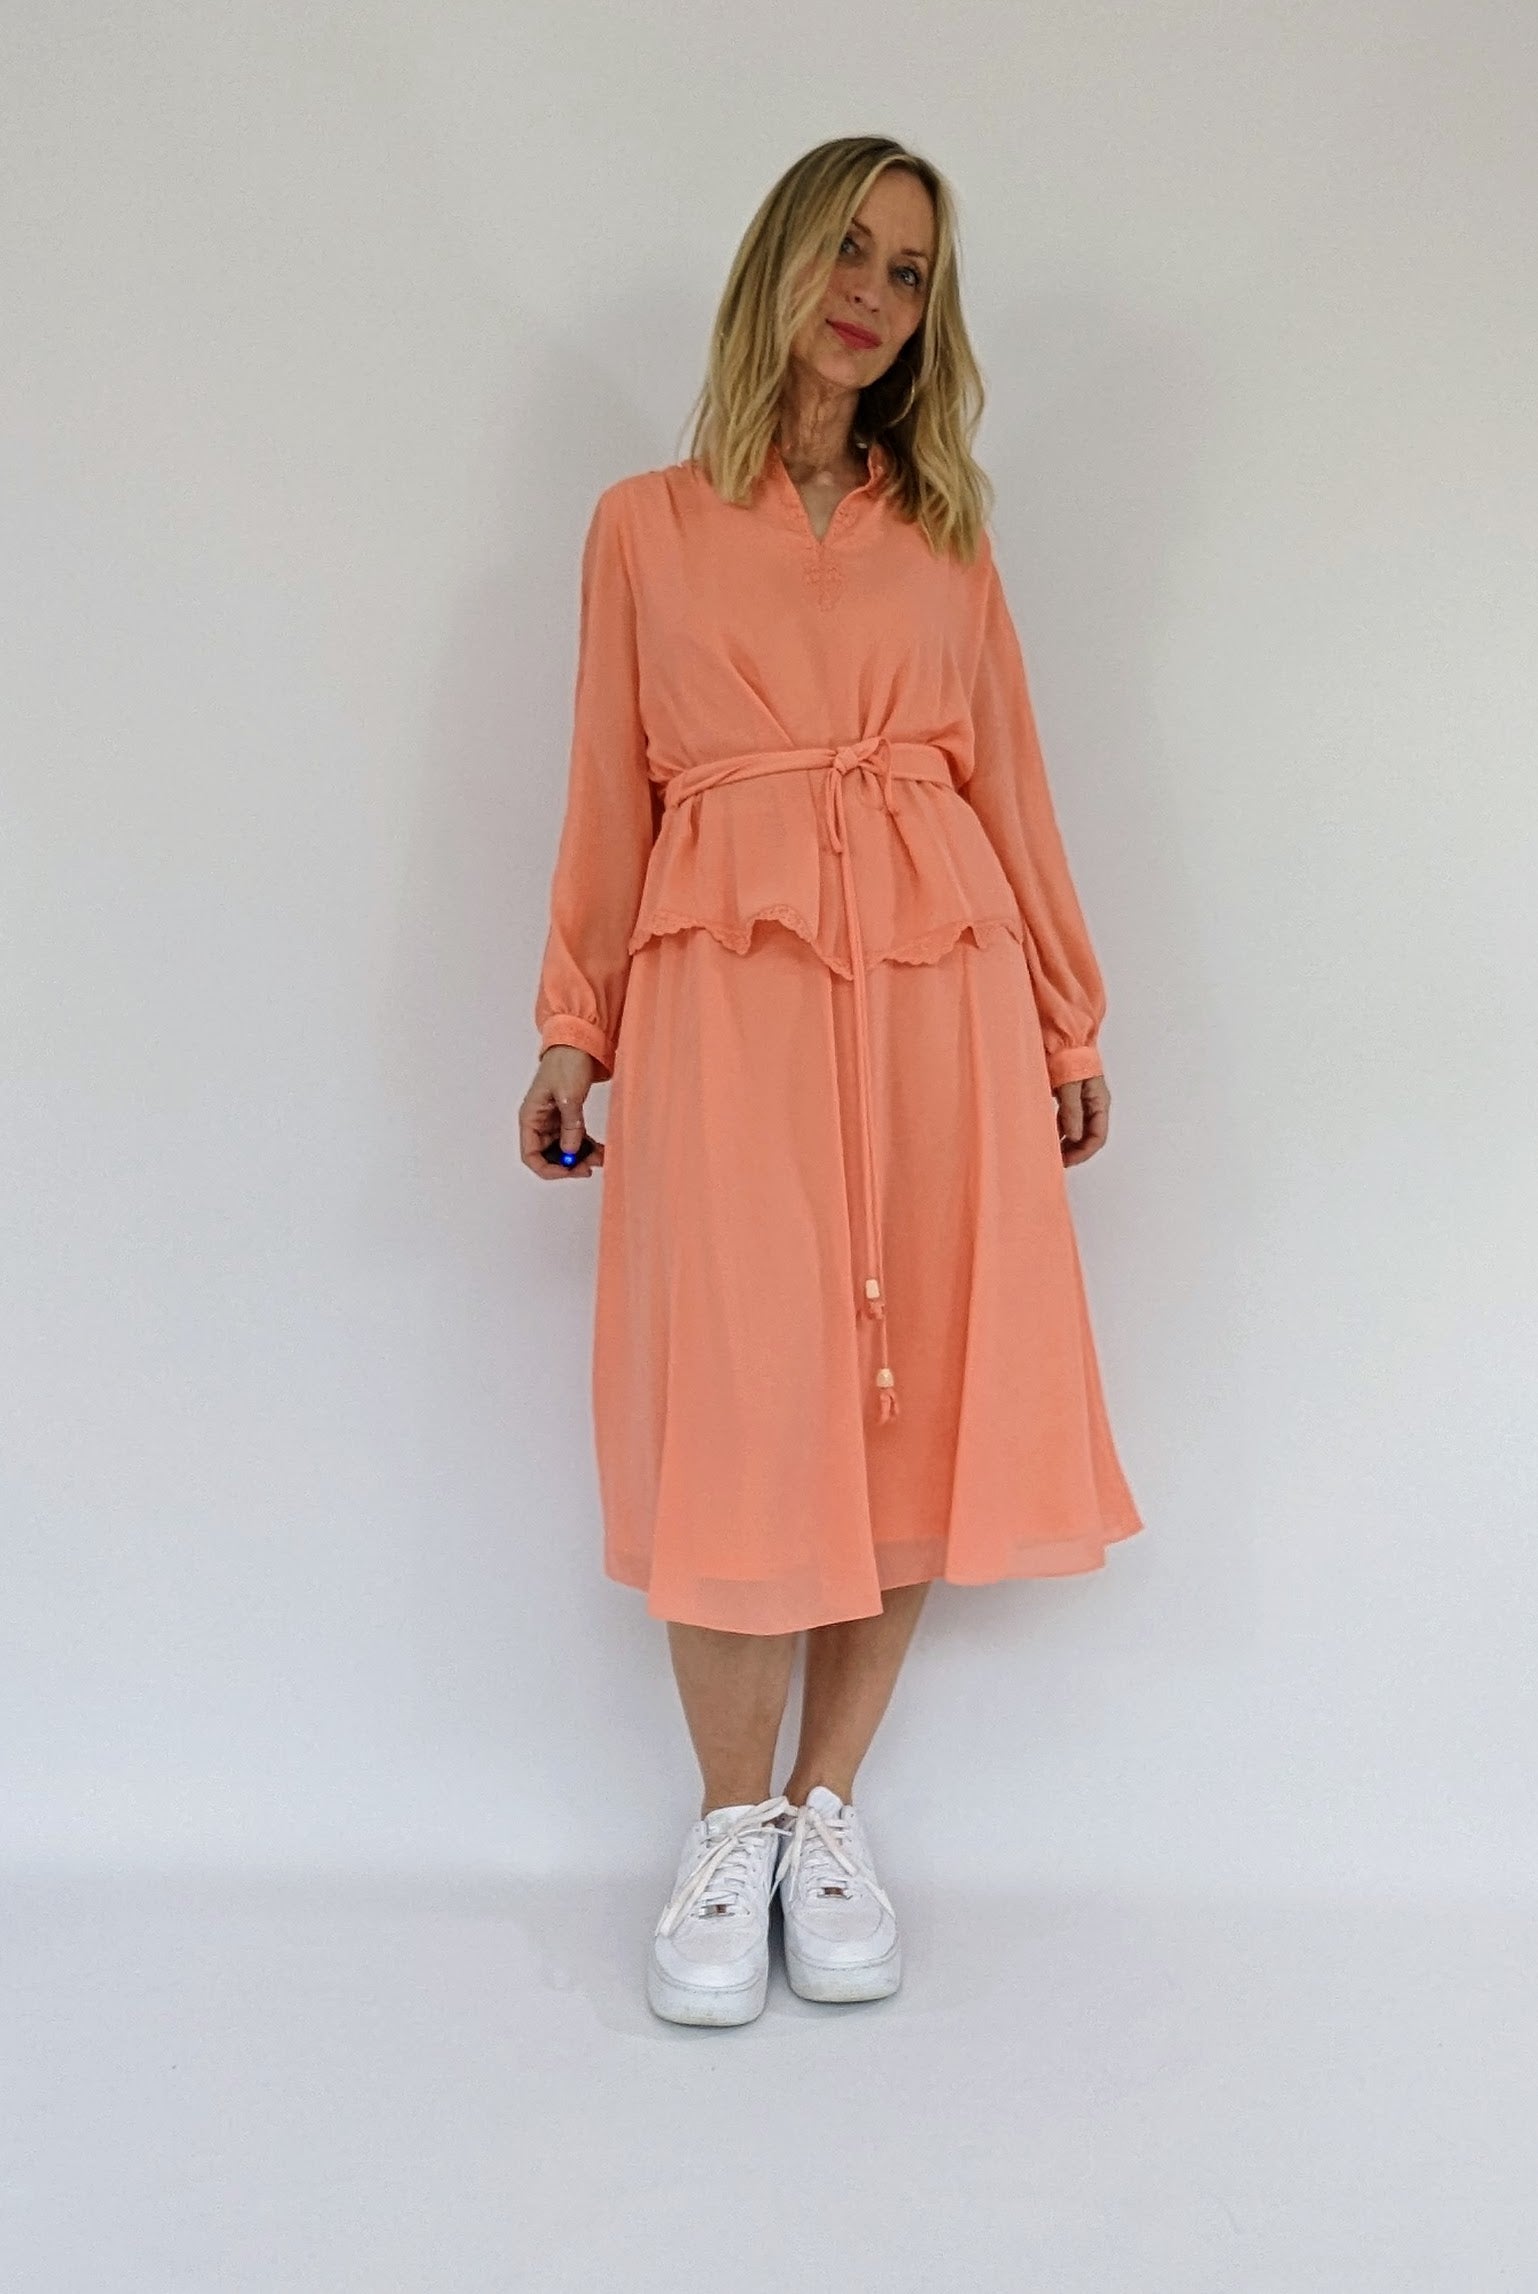 70s long sleeve peach dress